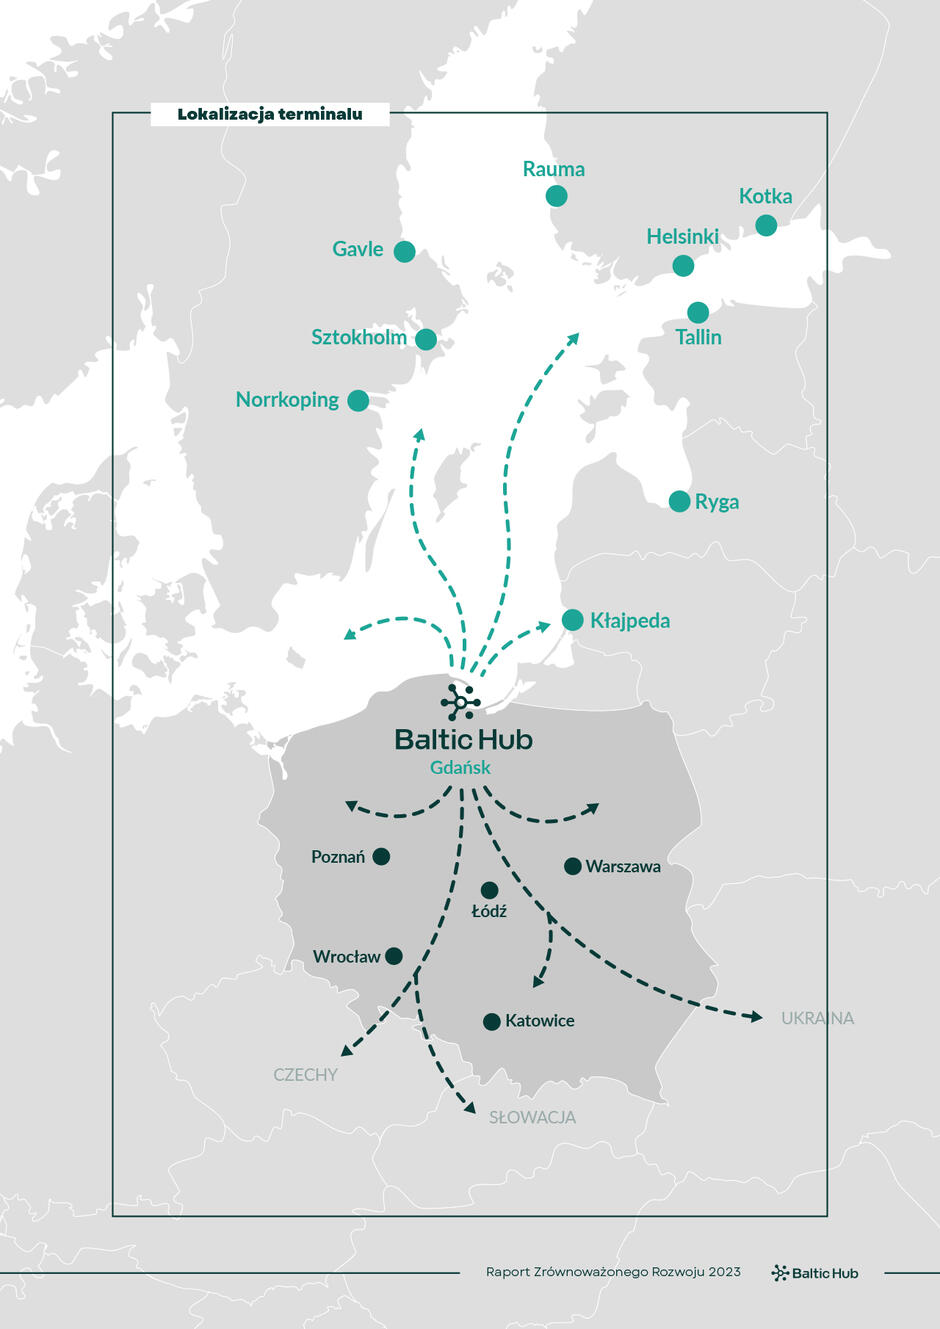 Mapa przedstawia lokalizację terminalu Baltic Hub w Gdańsku oraz jego połączenia logistyczne z innymi miastami i portami w regionie Morza Bałtyckiego oraz wewnątrz kraju. Baltic Hub znajduje się w Gdańsku, a strzałki na mapie wskazują kierunki transportu kontene rowego do różnych miejsc docelowych. Na mapie zaznaczone są główne kierunki transportu:Połączenia morskie prowadzą do portów w Norrkoping, Sztokholmie, Gavle, Rauma, Helsinkach, Kotka, Tallinie, Rydze i Kłajpedzie. Połączenia lądowe prowadzą do większych miast w Polsce: Poznań, Warszawa, Łódź, Wrocław, Katowice oraz do innych krajów, takich jak Czechy i Słowacja.